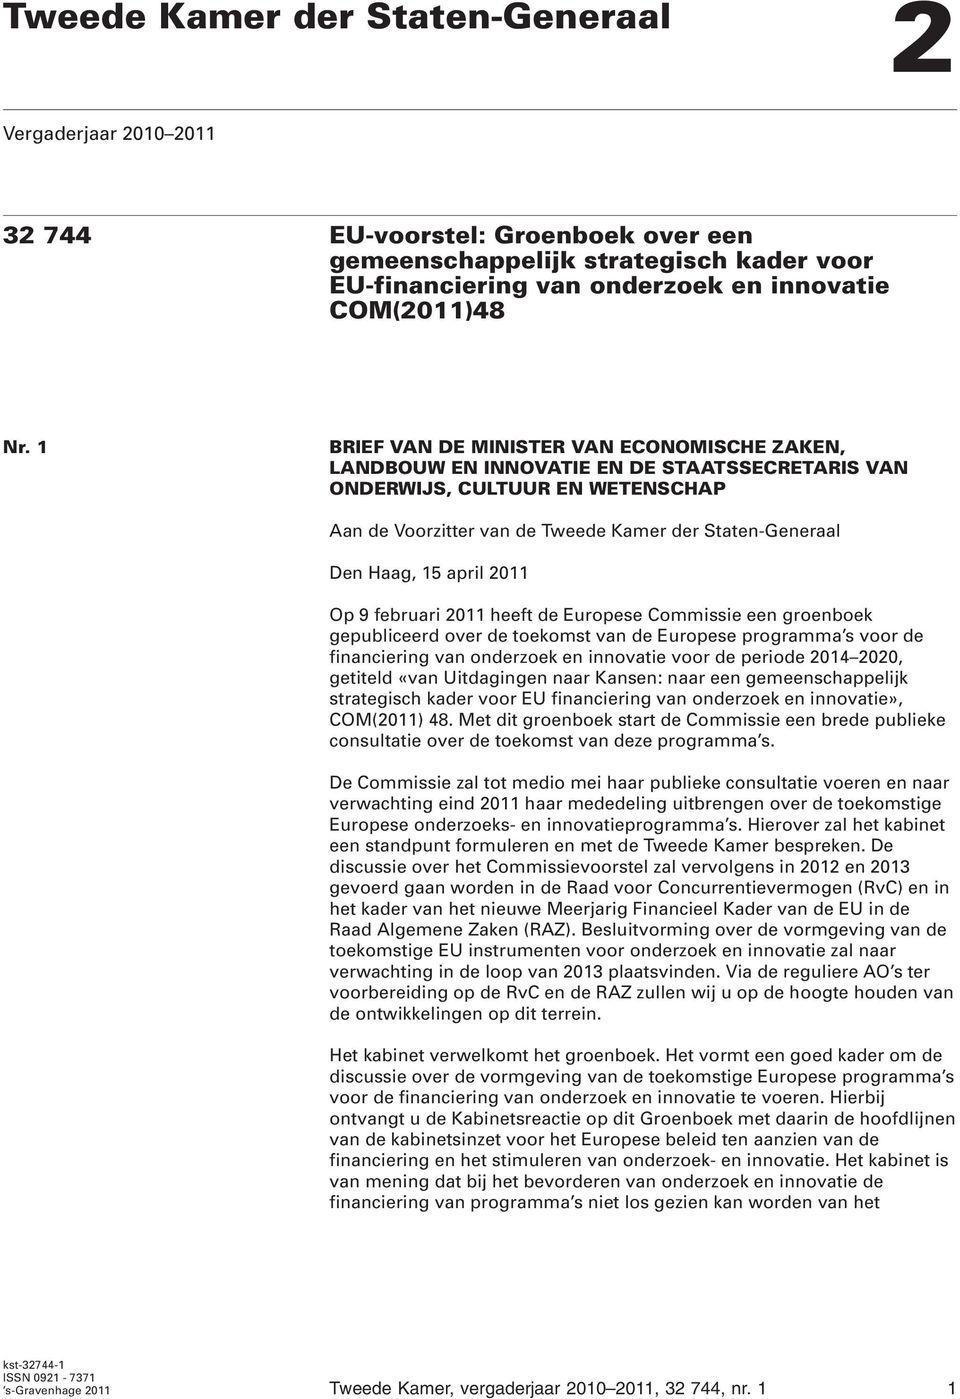 april 2011 Op 9 februari 2011 heeft de Europese Commissie een groenboek gepubliceerd over de toekomst van de Europese programma s voor de financiering van onderzoek en innovatie voor de periode 2014